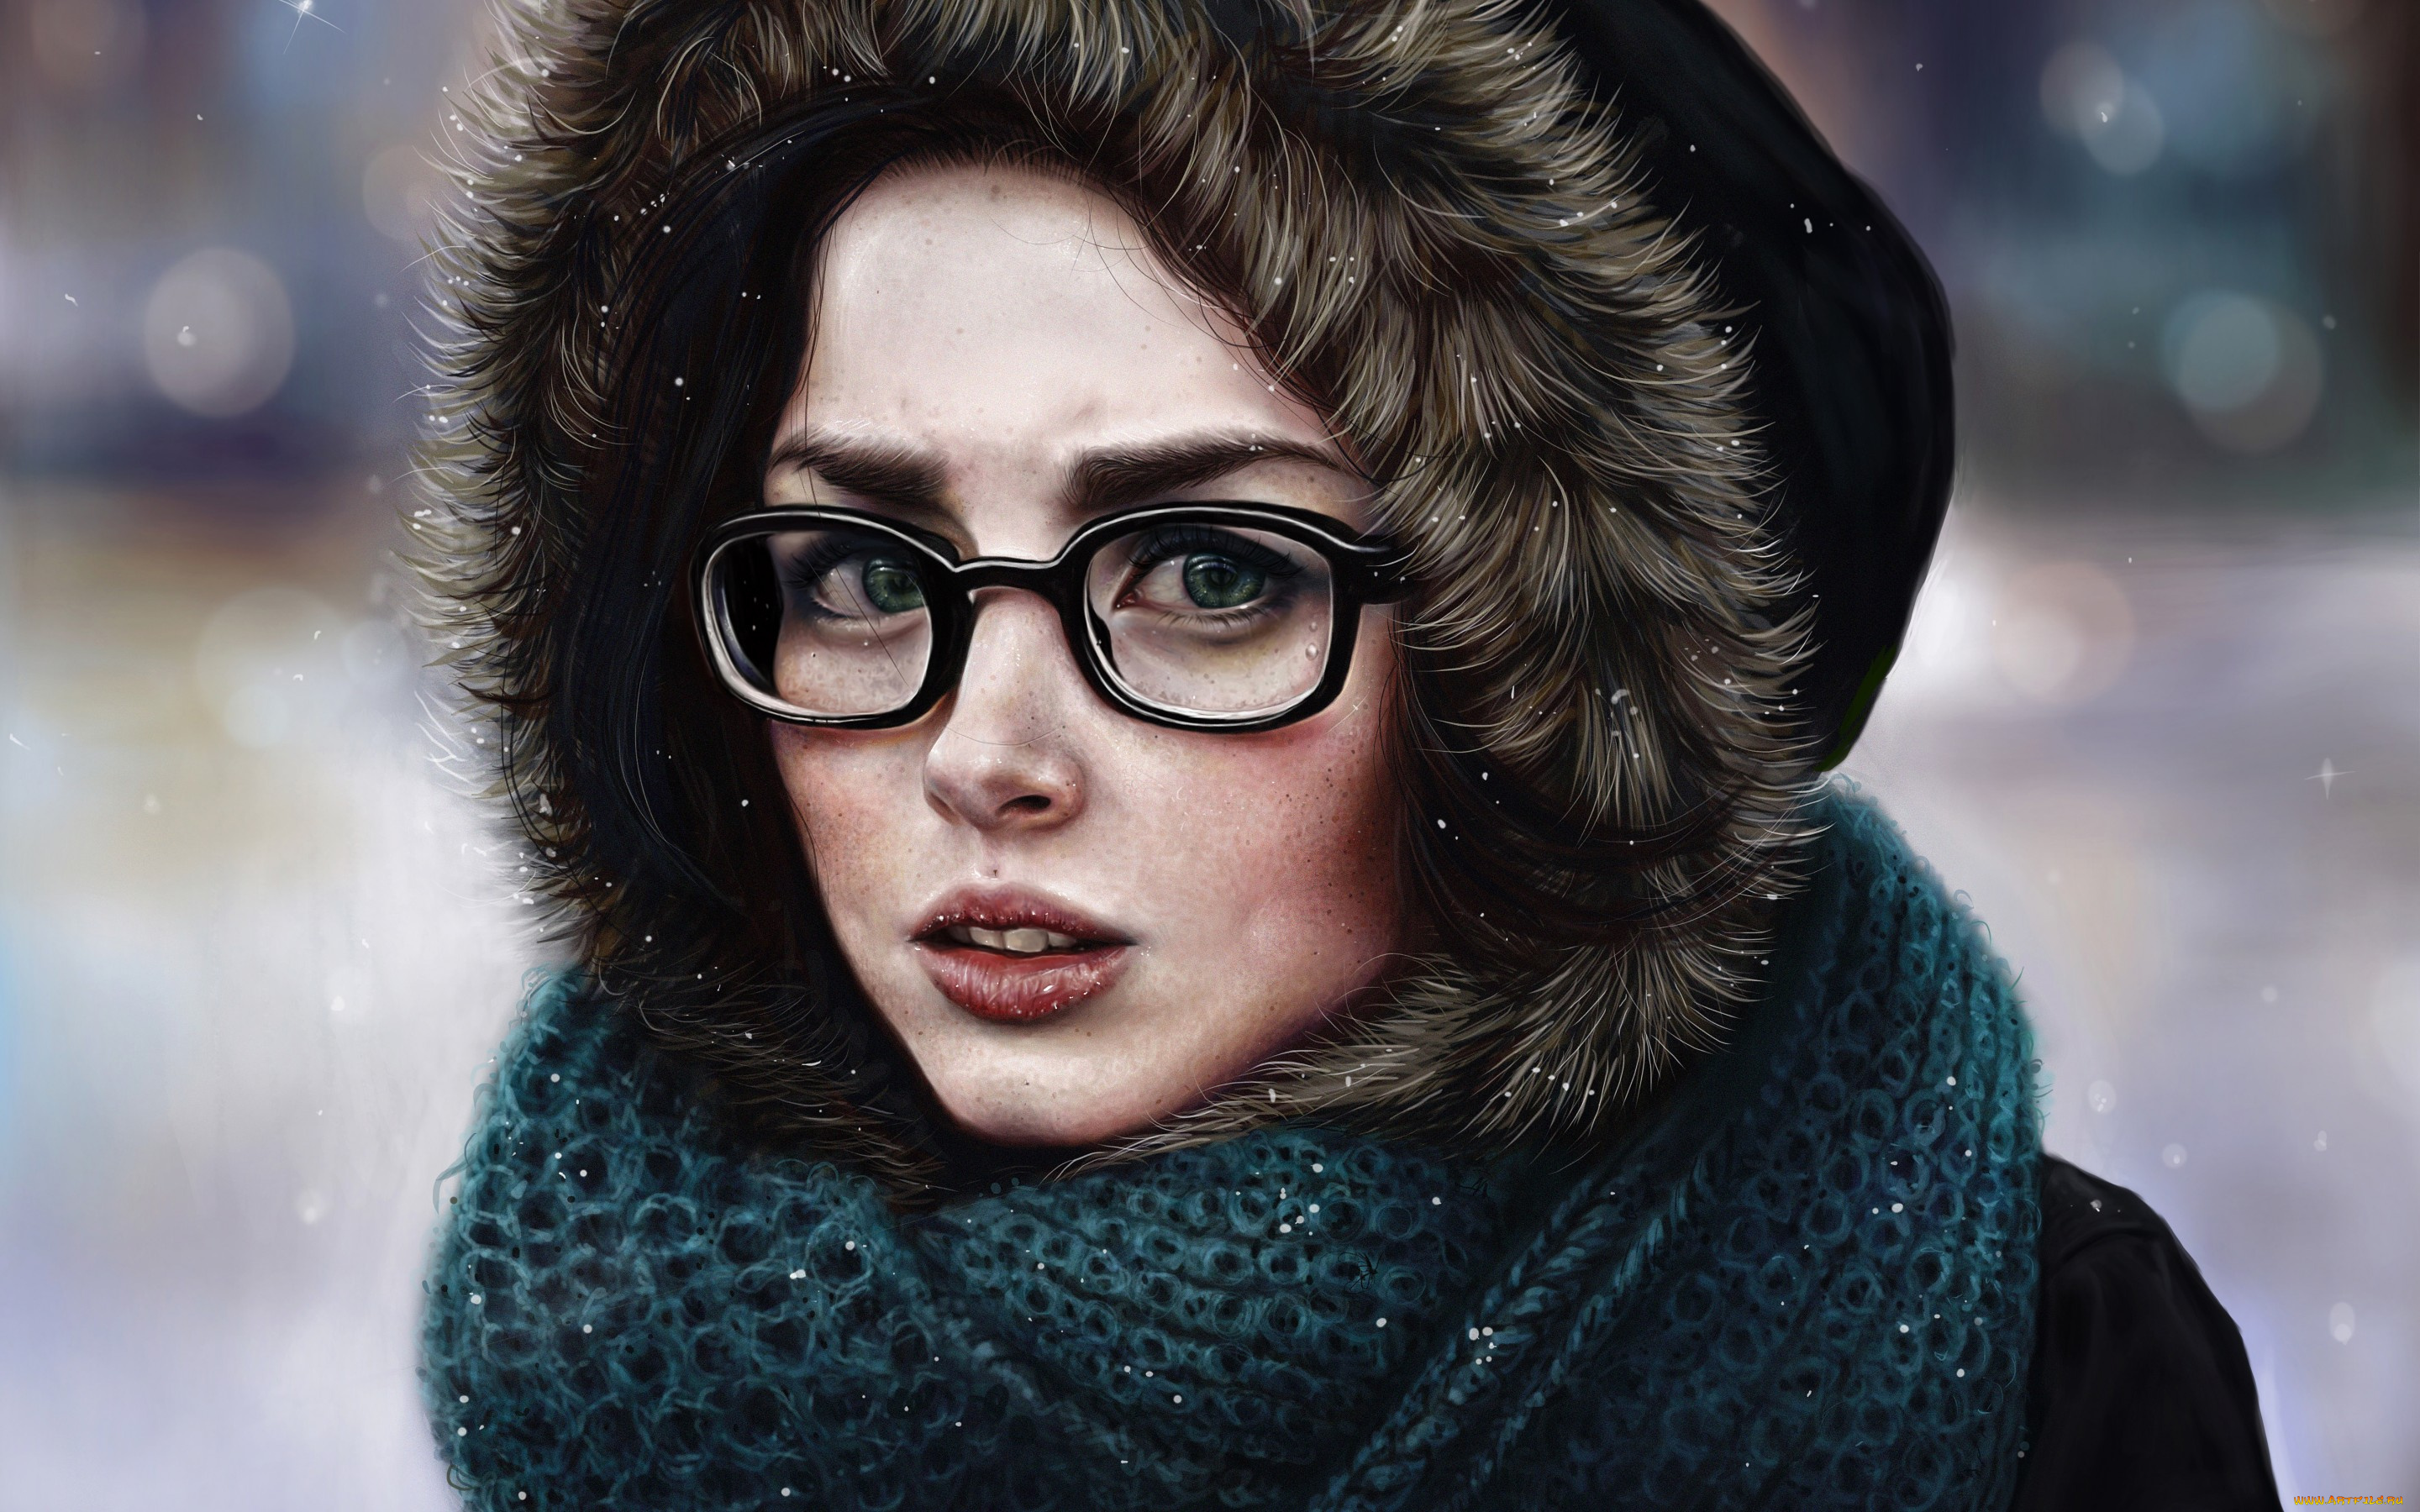 рисованное, люди, девушка, зима, капюшон, очки, шарф, холод, лицо, взгляд